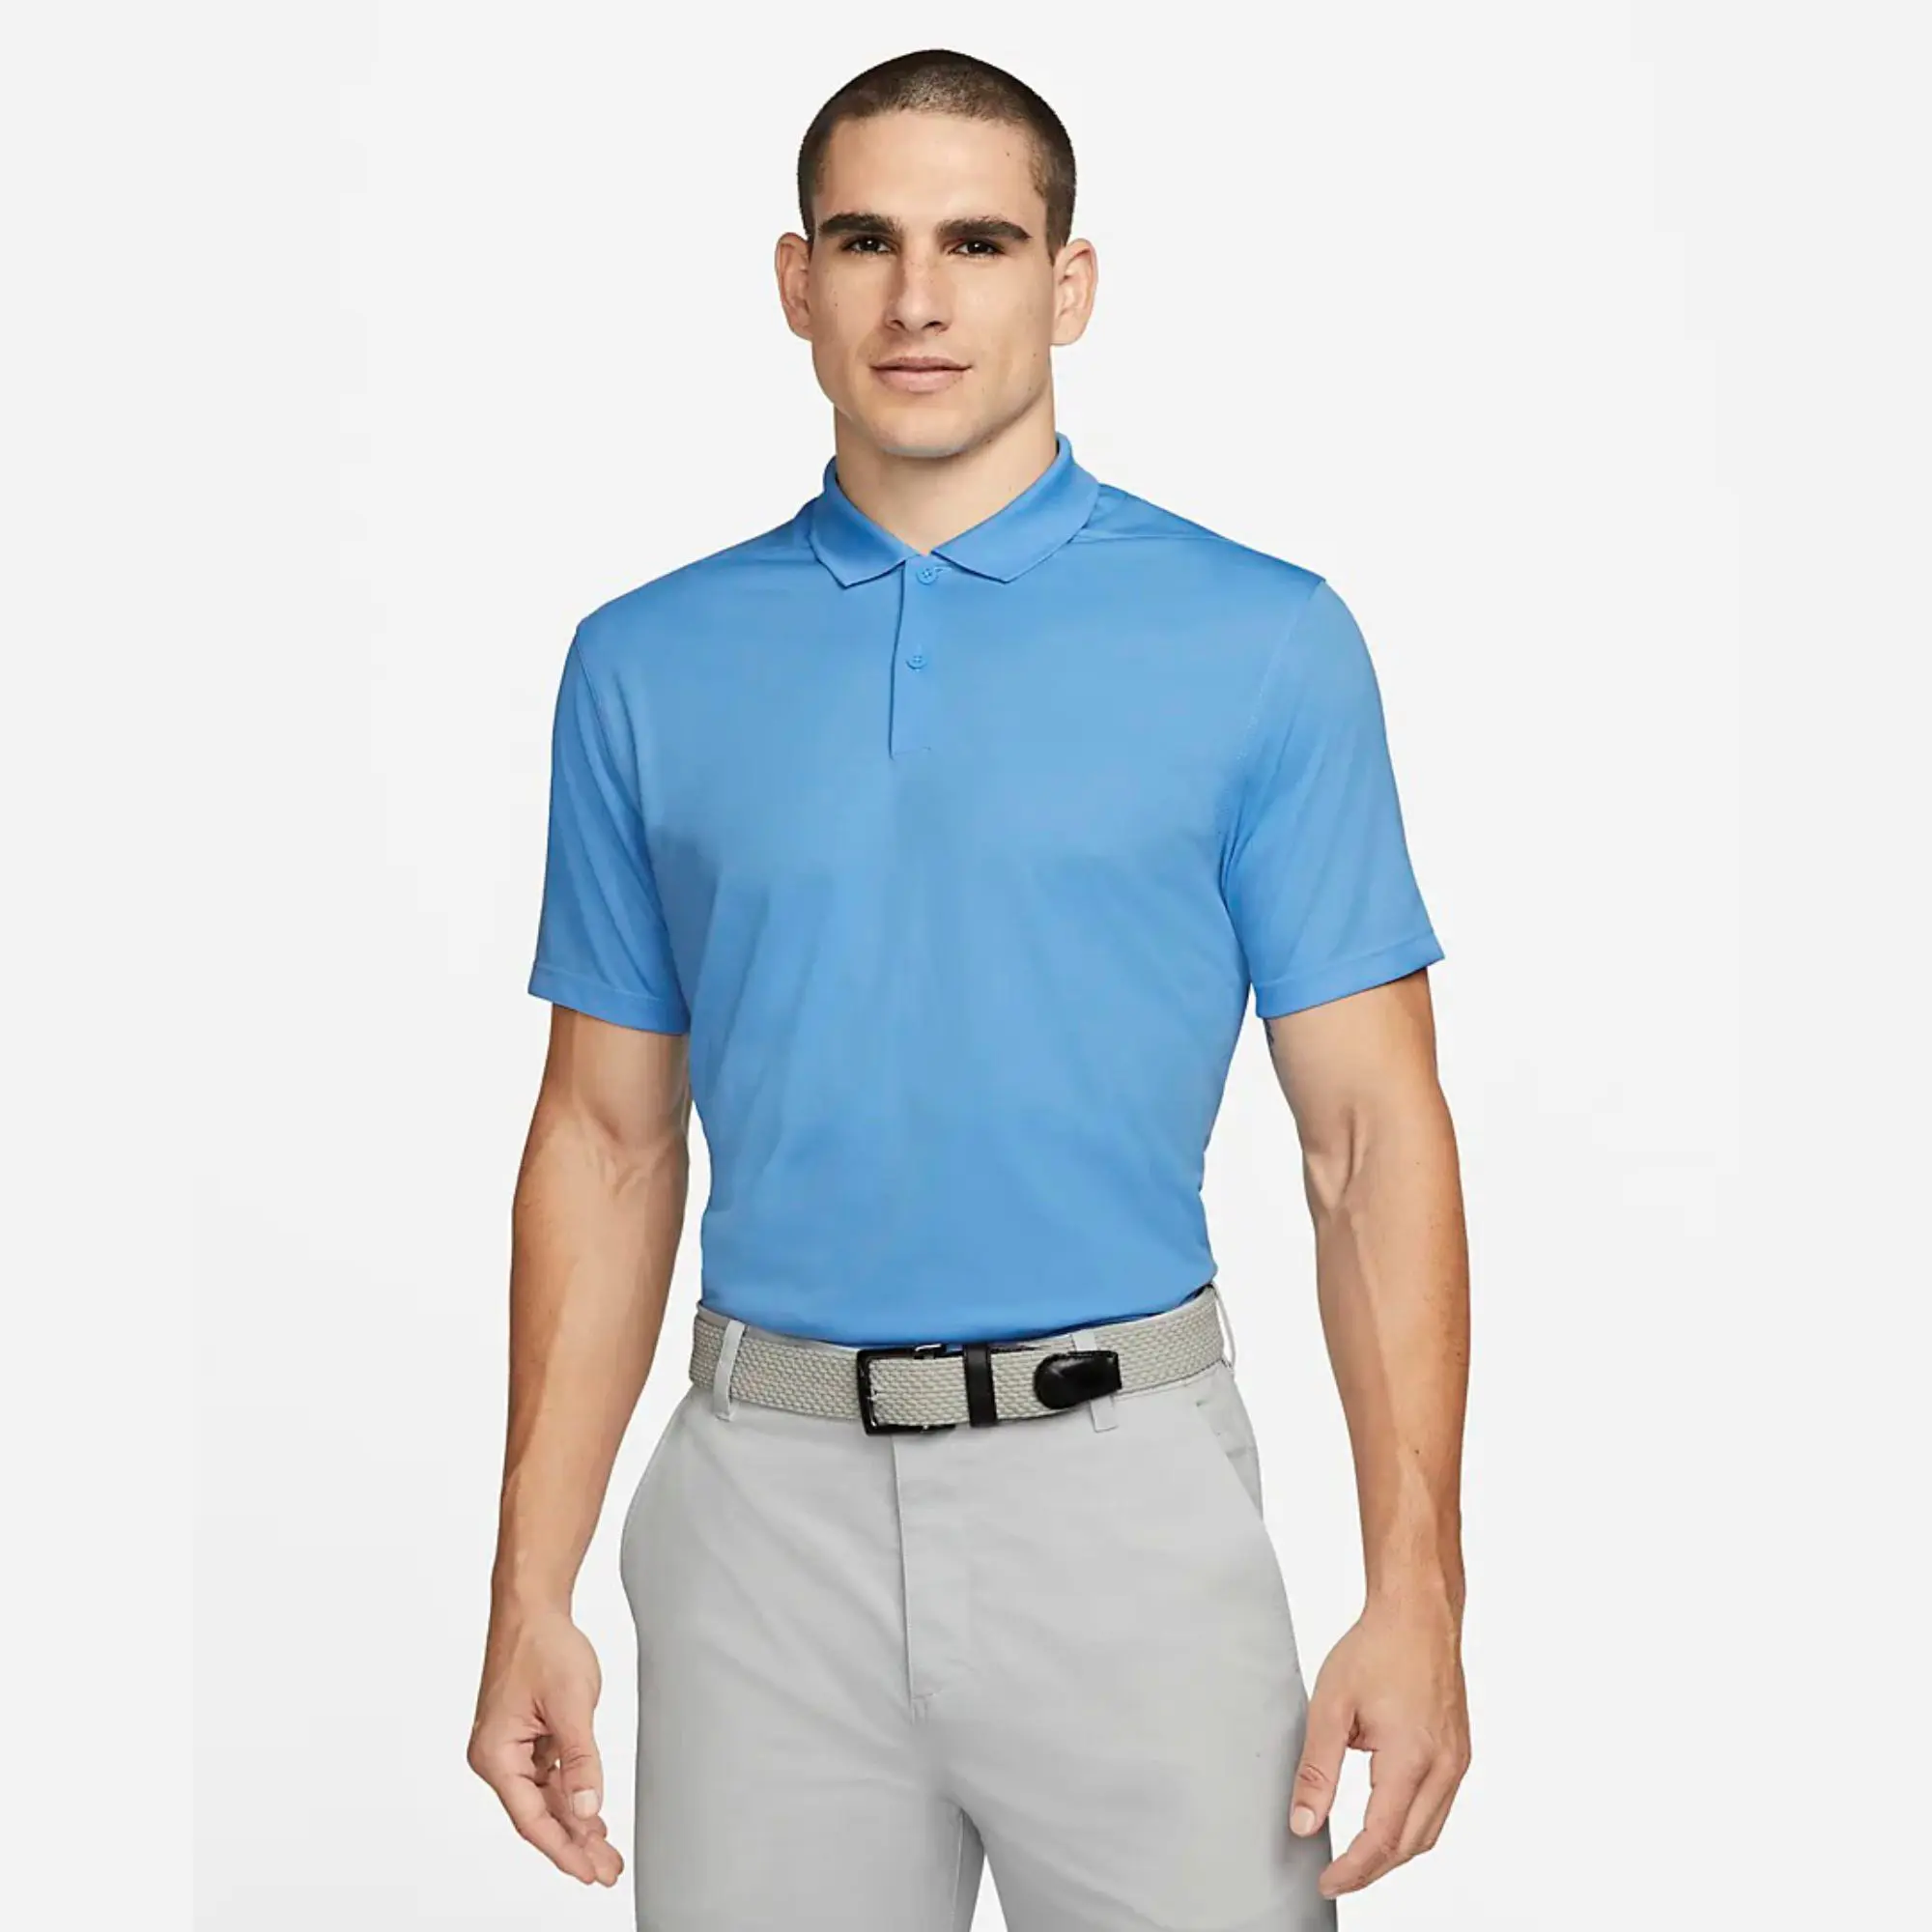 Camiseta transpirable de 100% poliéster para hombre, Polo de Golf con solapa de 2 botones, rendimiento universitario, color azul